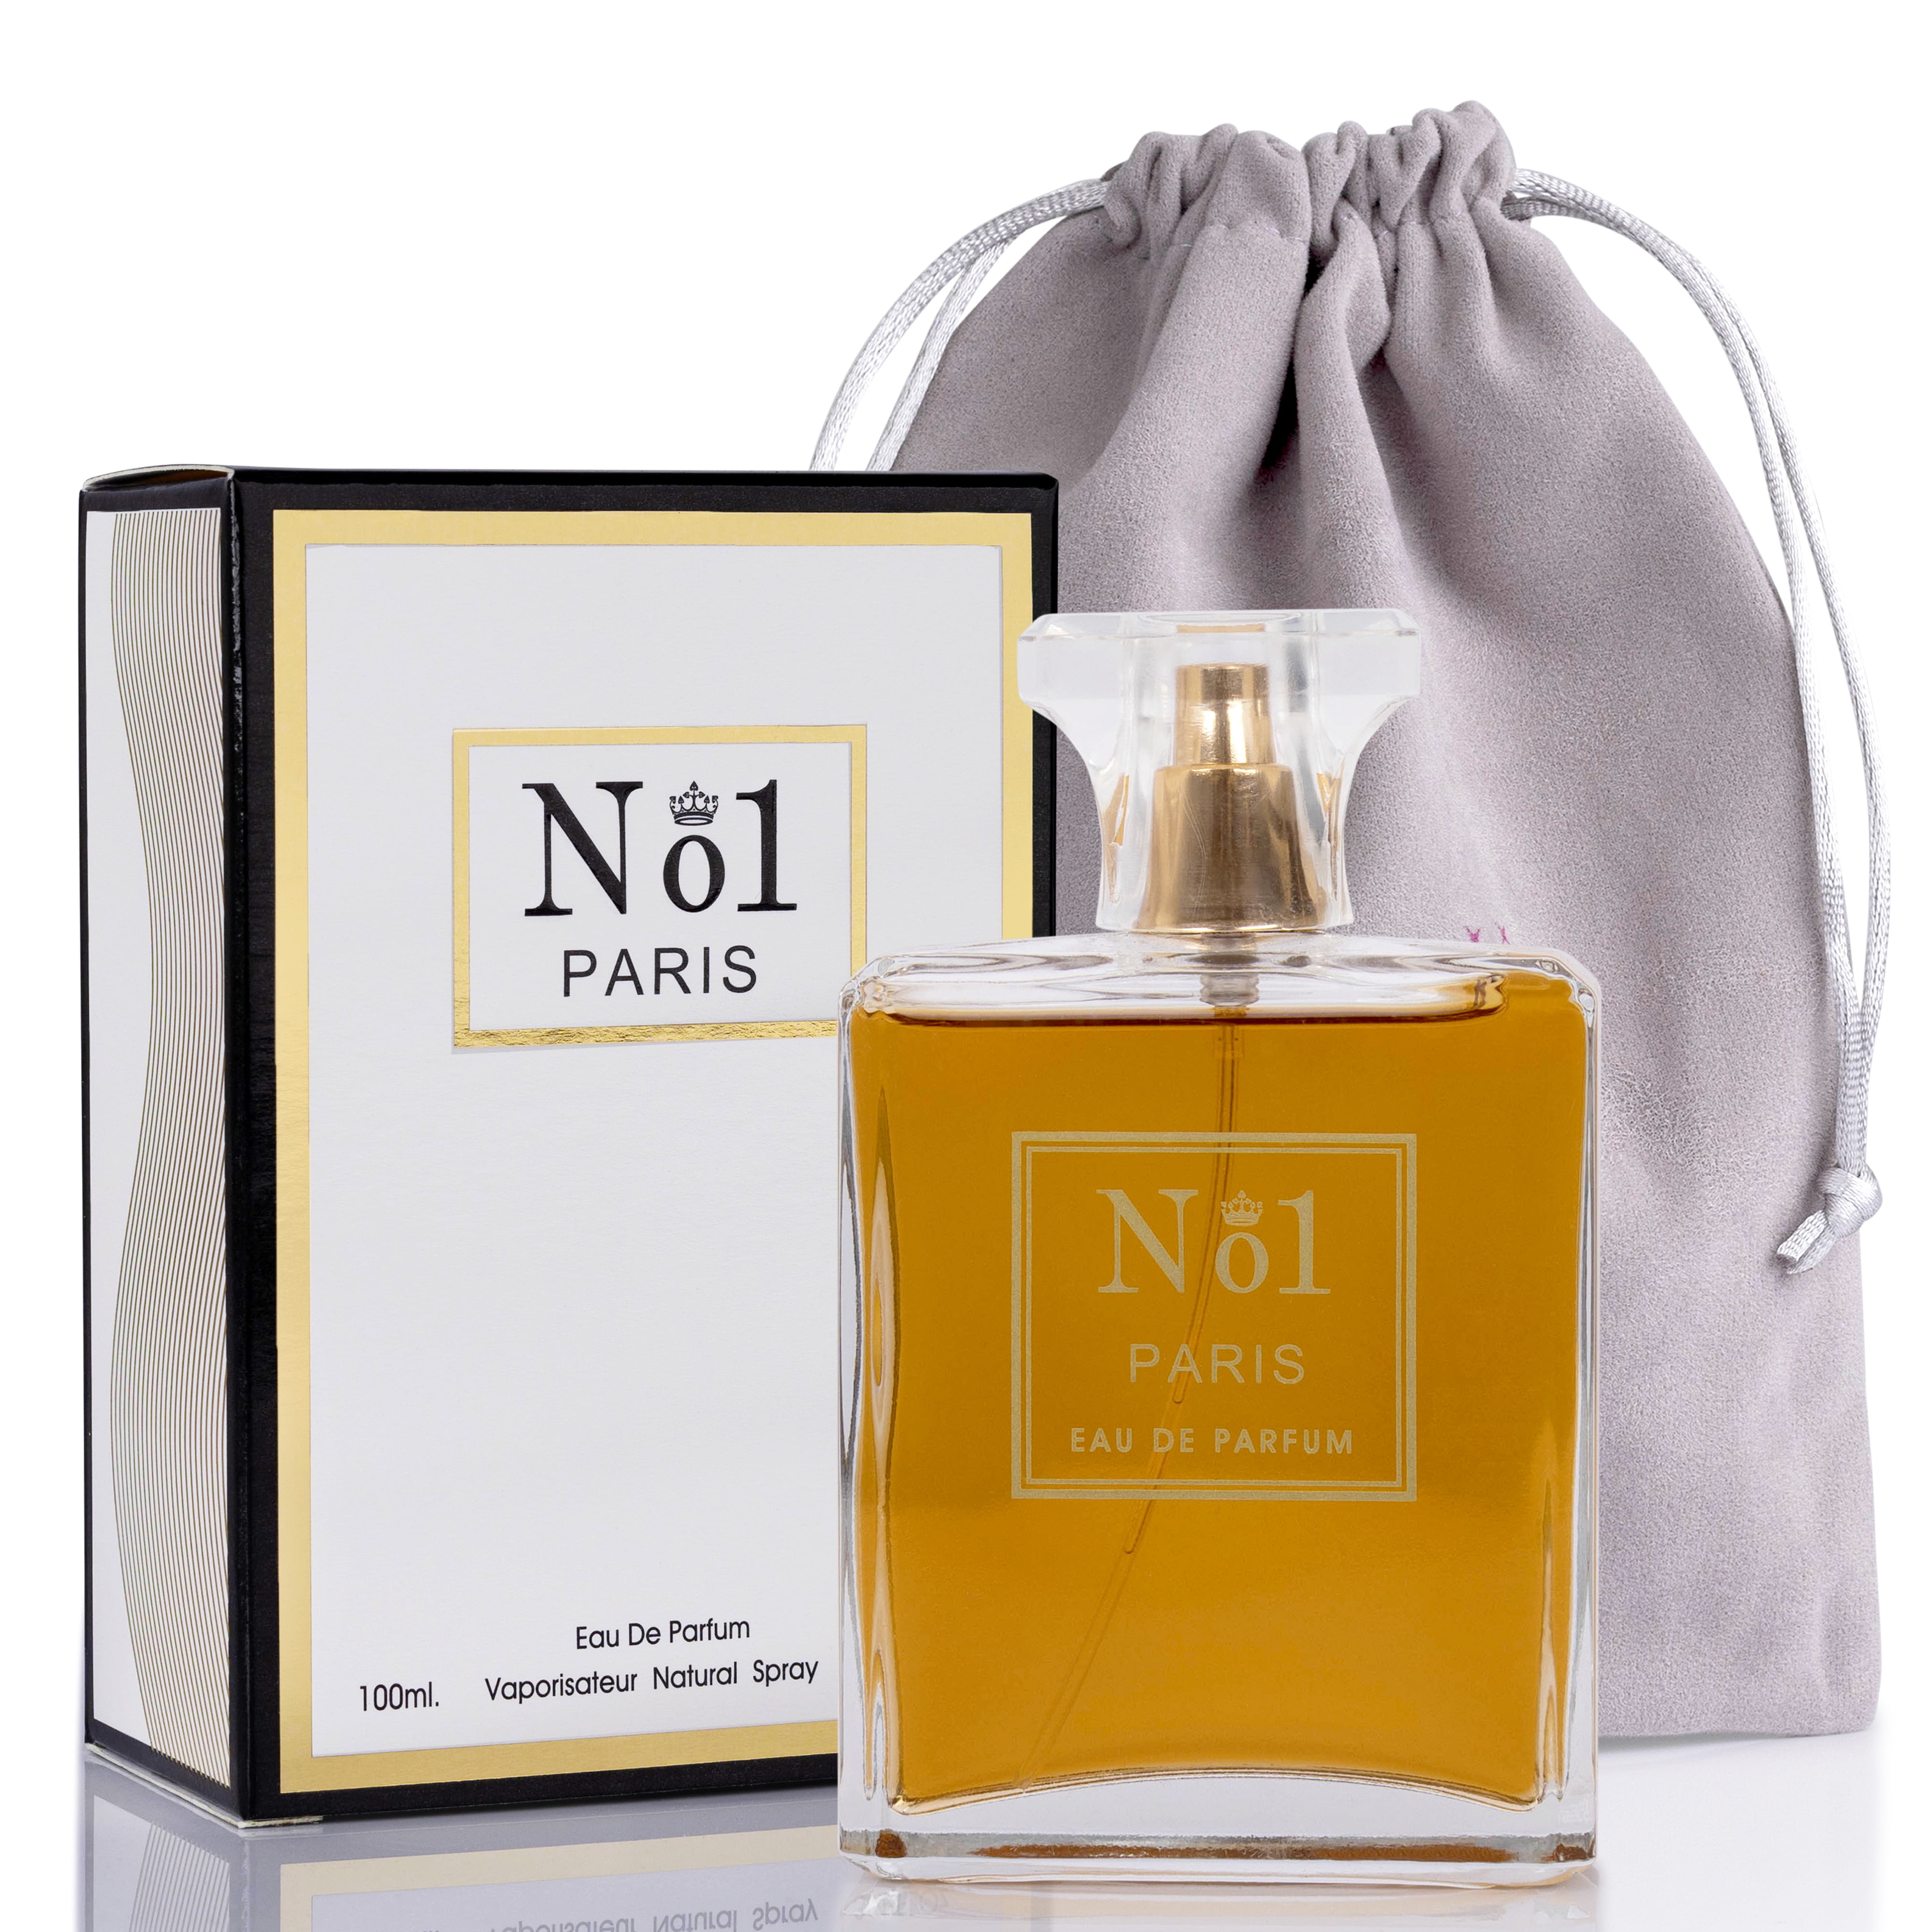 NovoGlow No.1 Paris for Women Eau De Parfum 3.4 fl oz. Fragrance for Women  Women's Fragrance with NovoGlow Carrying Pouch 